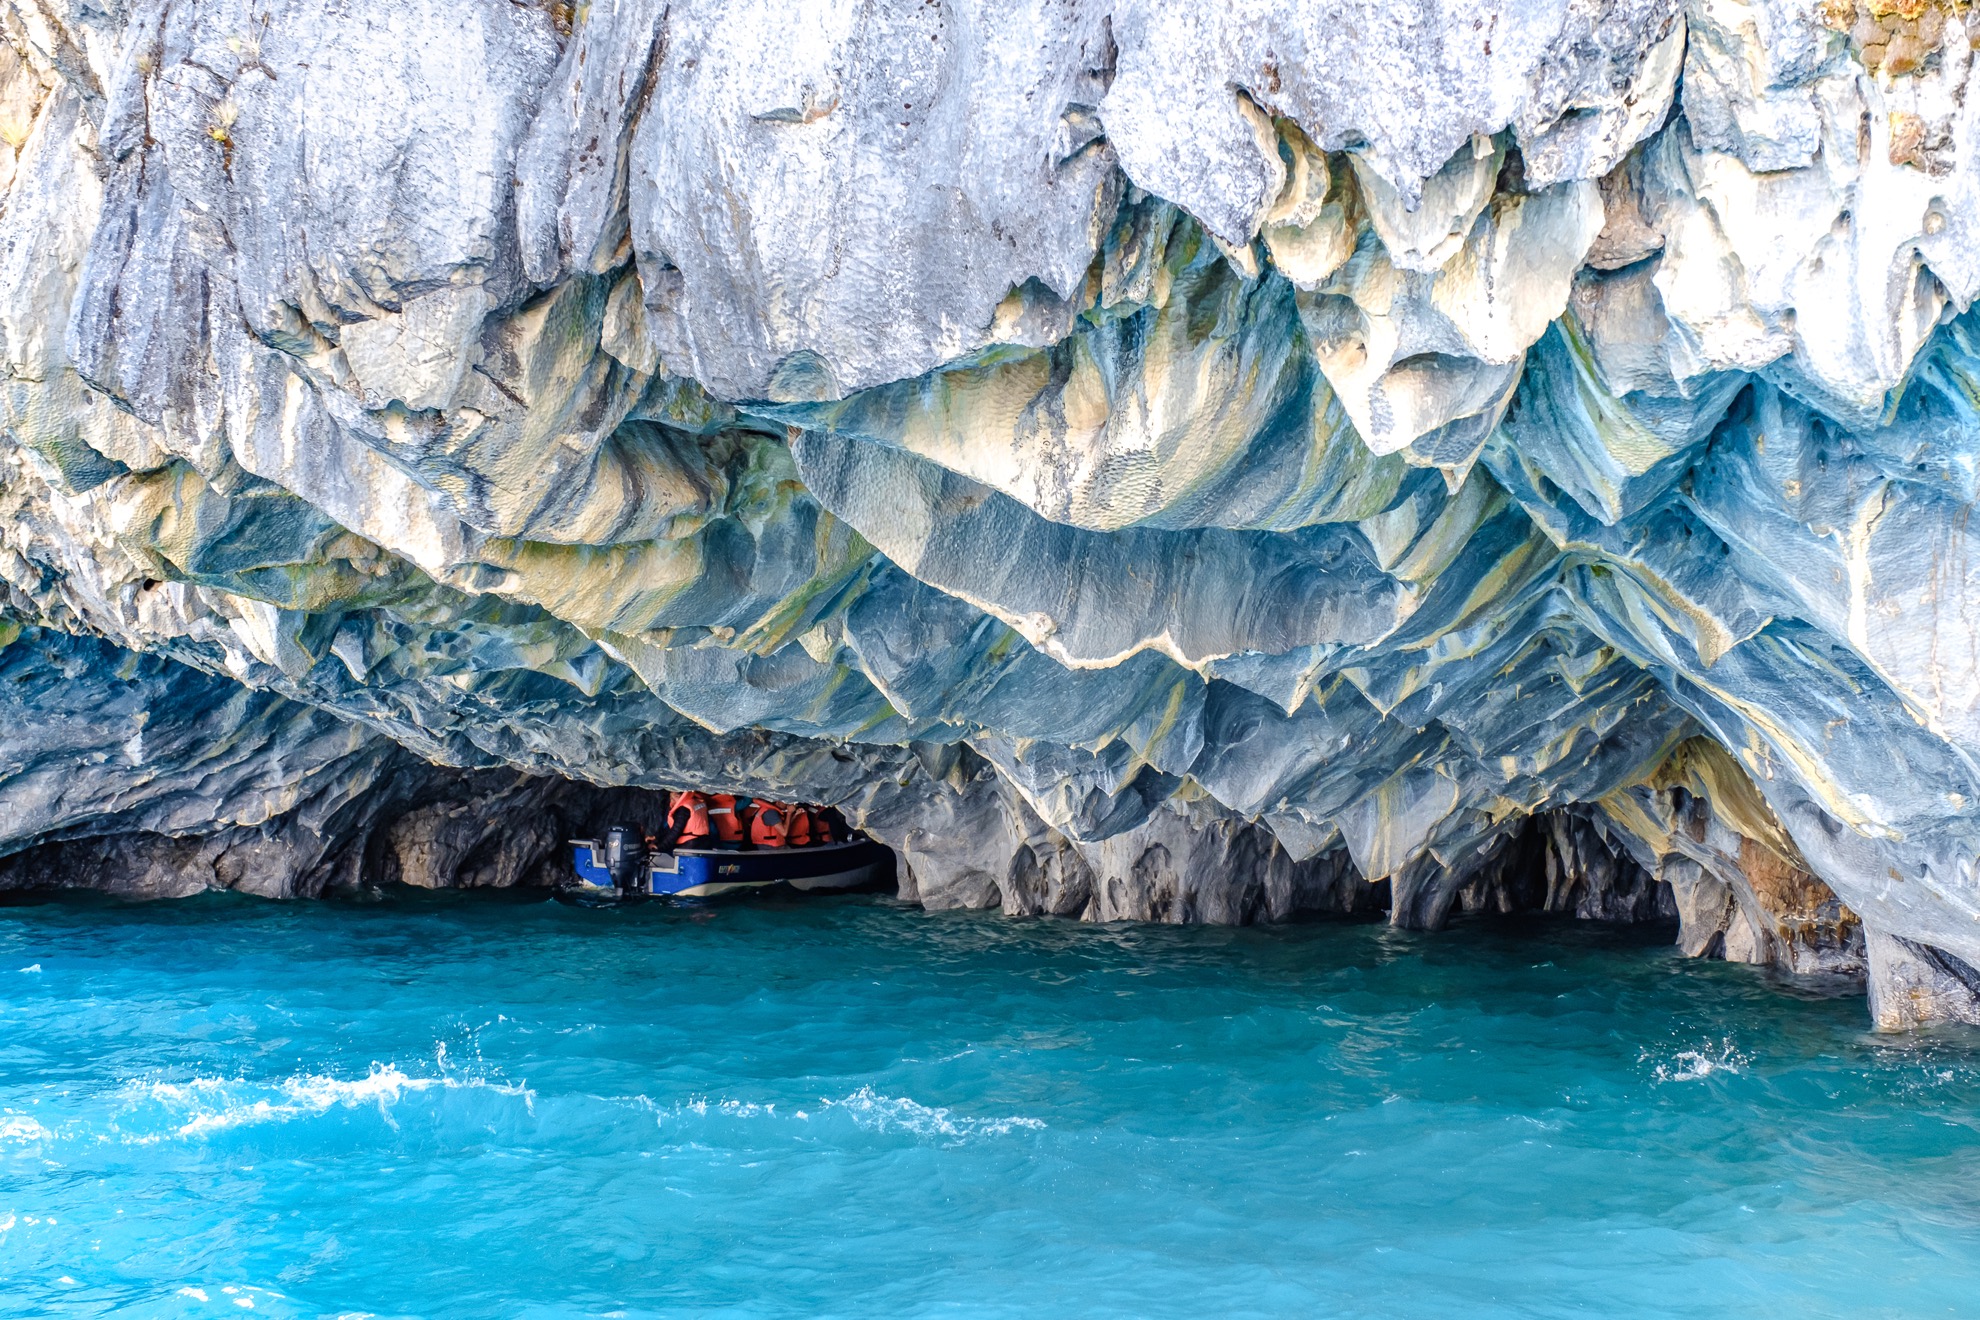 Hecho de mármol puro, estas increíbles cuevas cambian de color durante todo el año